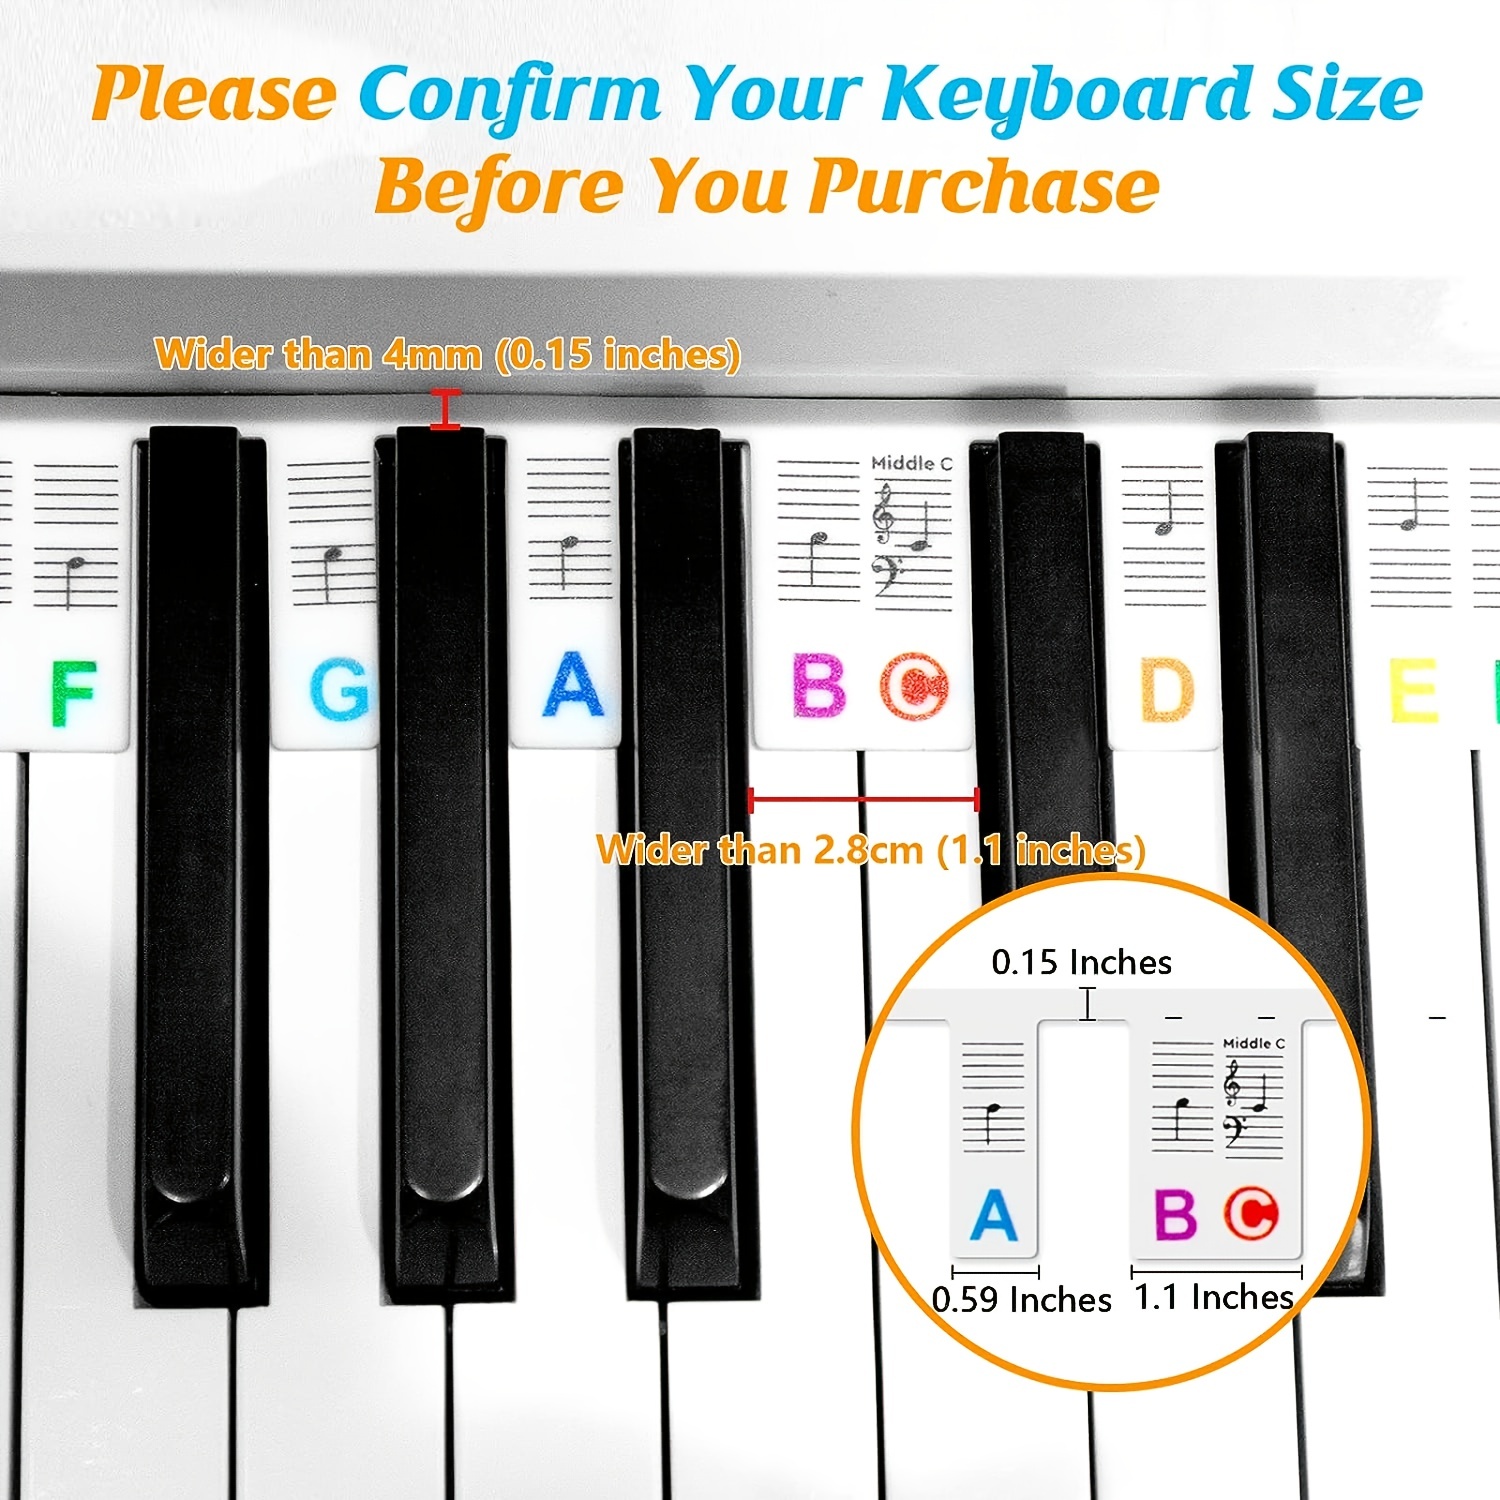 Autocollants pour clavier ou piano - Pour apprendre aux enfants à jouer de  manière amusante - Jusqu'à 61 touches - Psmw61